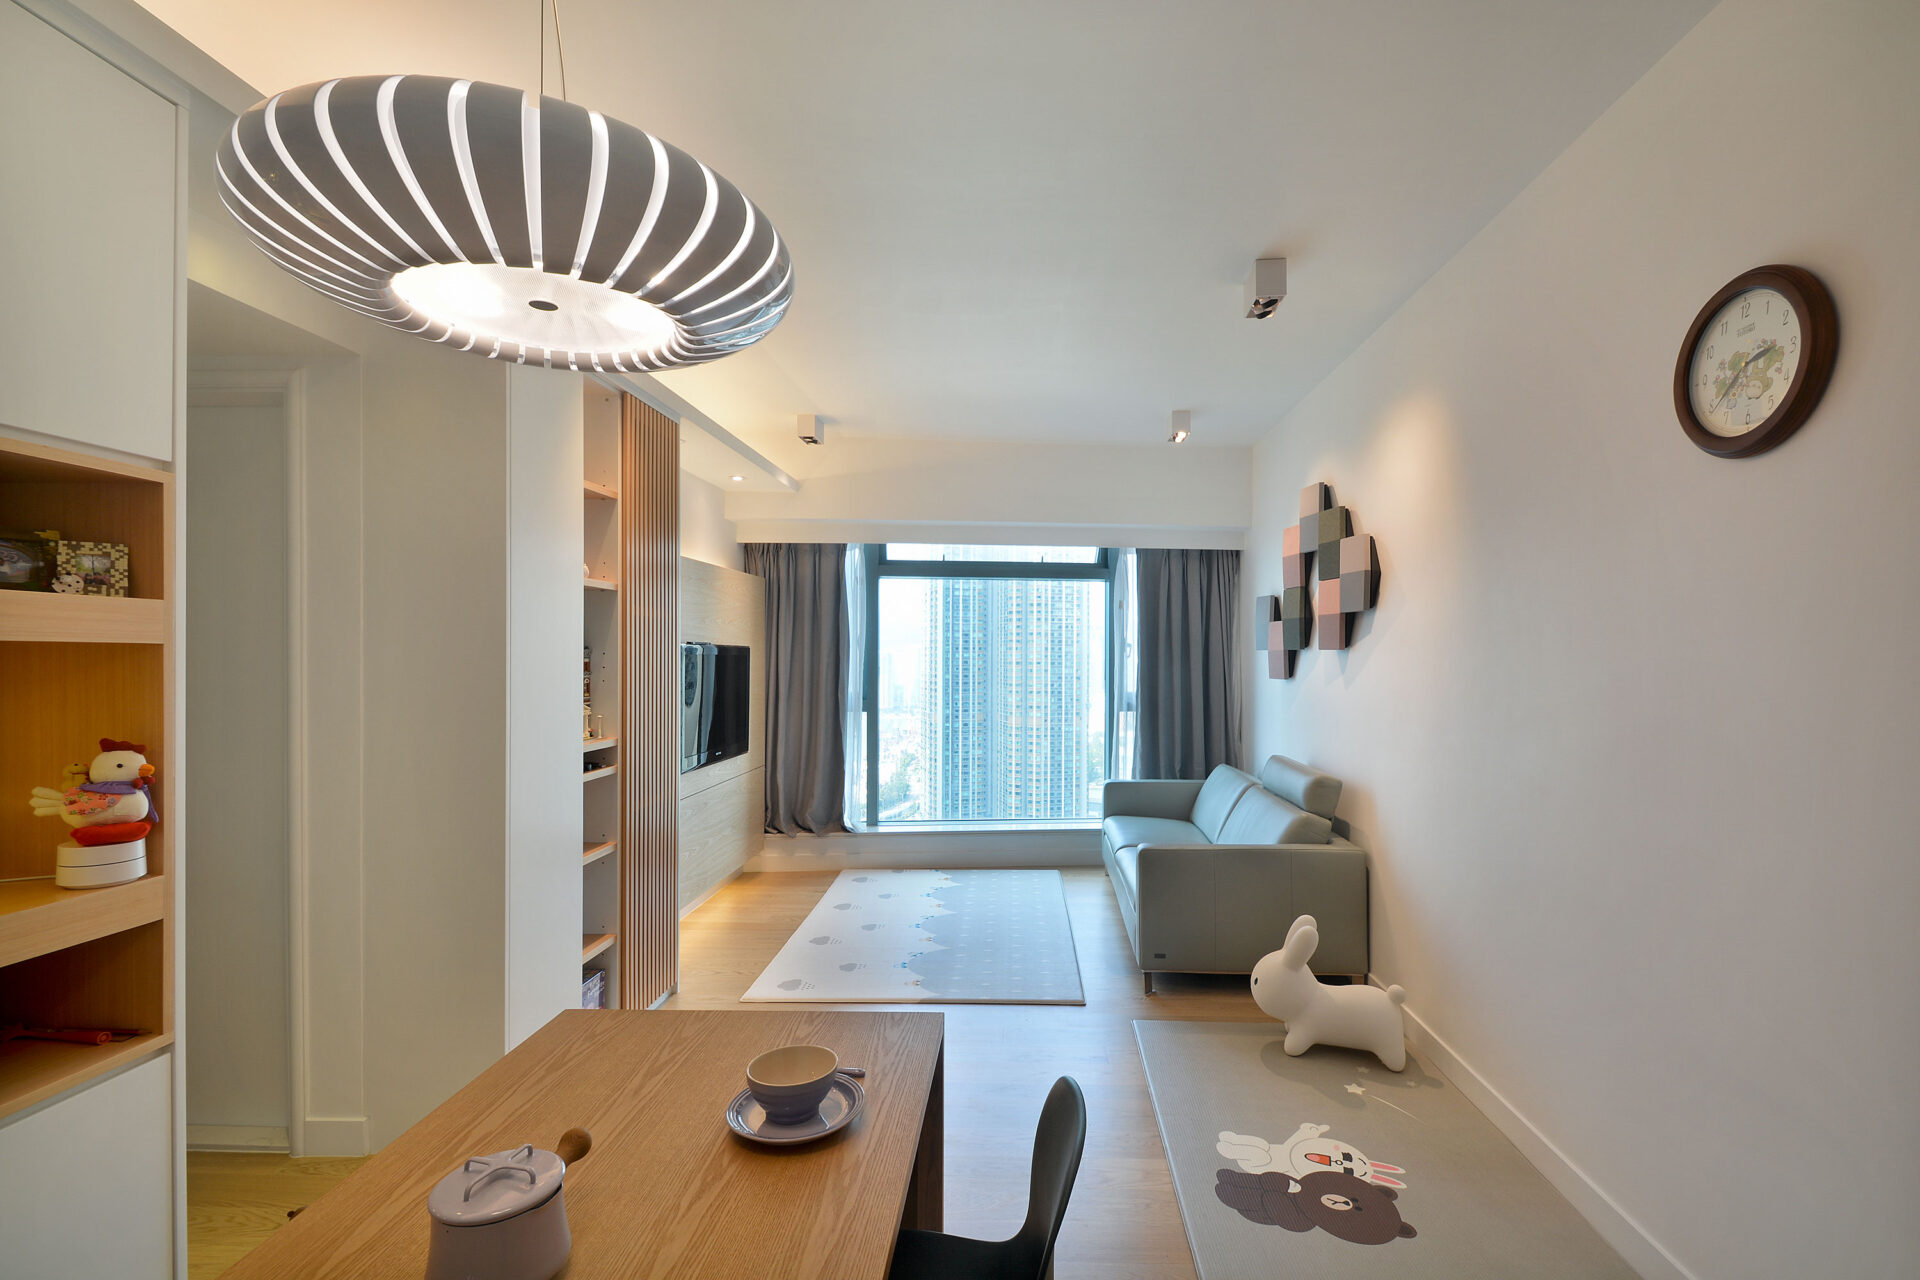 Designpedia-Space Design_The Habourside_Dining Room & Living Room